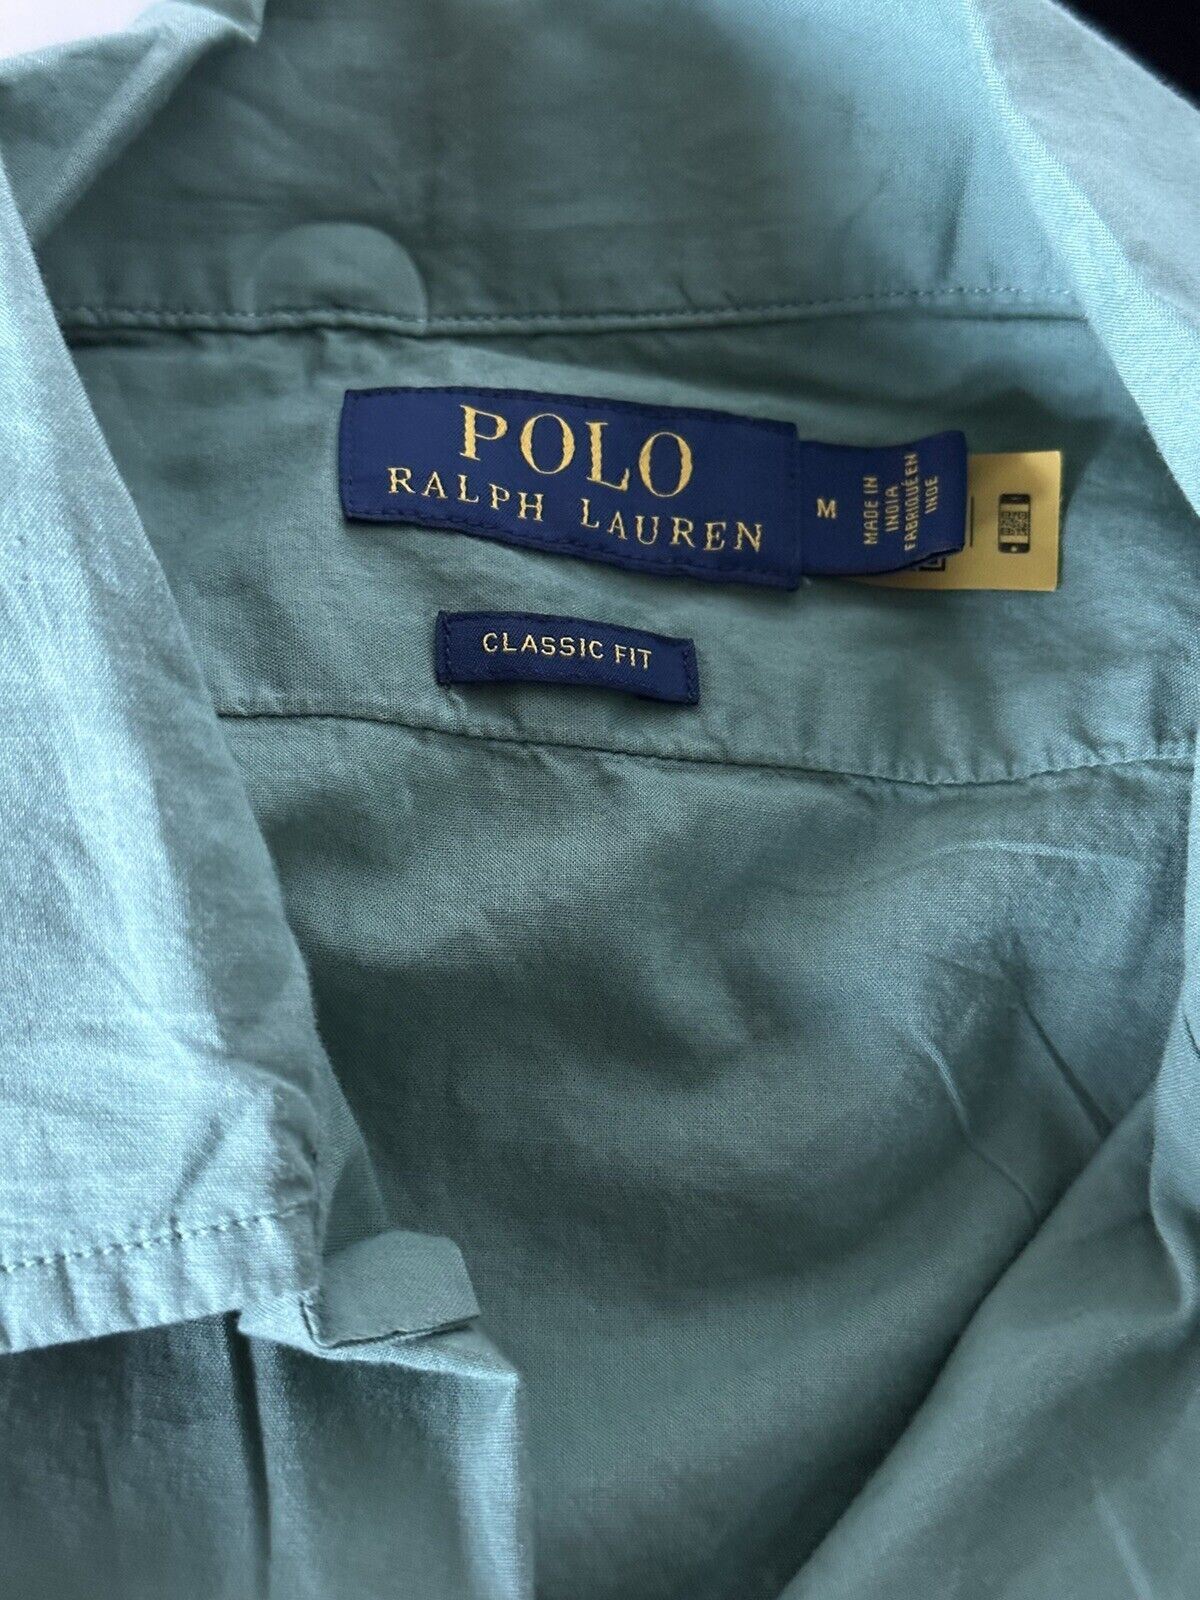 NWT Polo Ralph Lauren Men's Green Short Sleeve Dress Shirt Medium Made in India